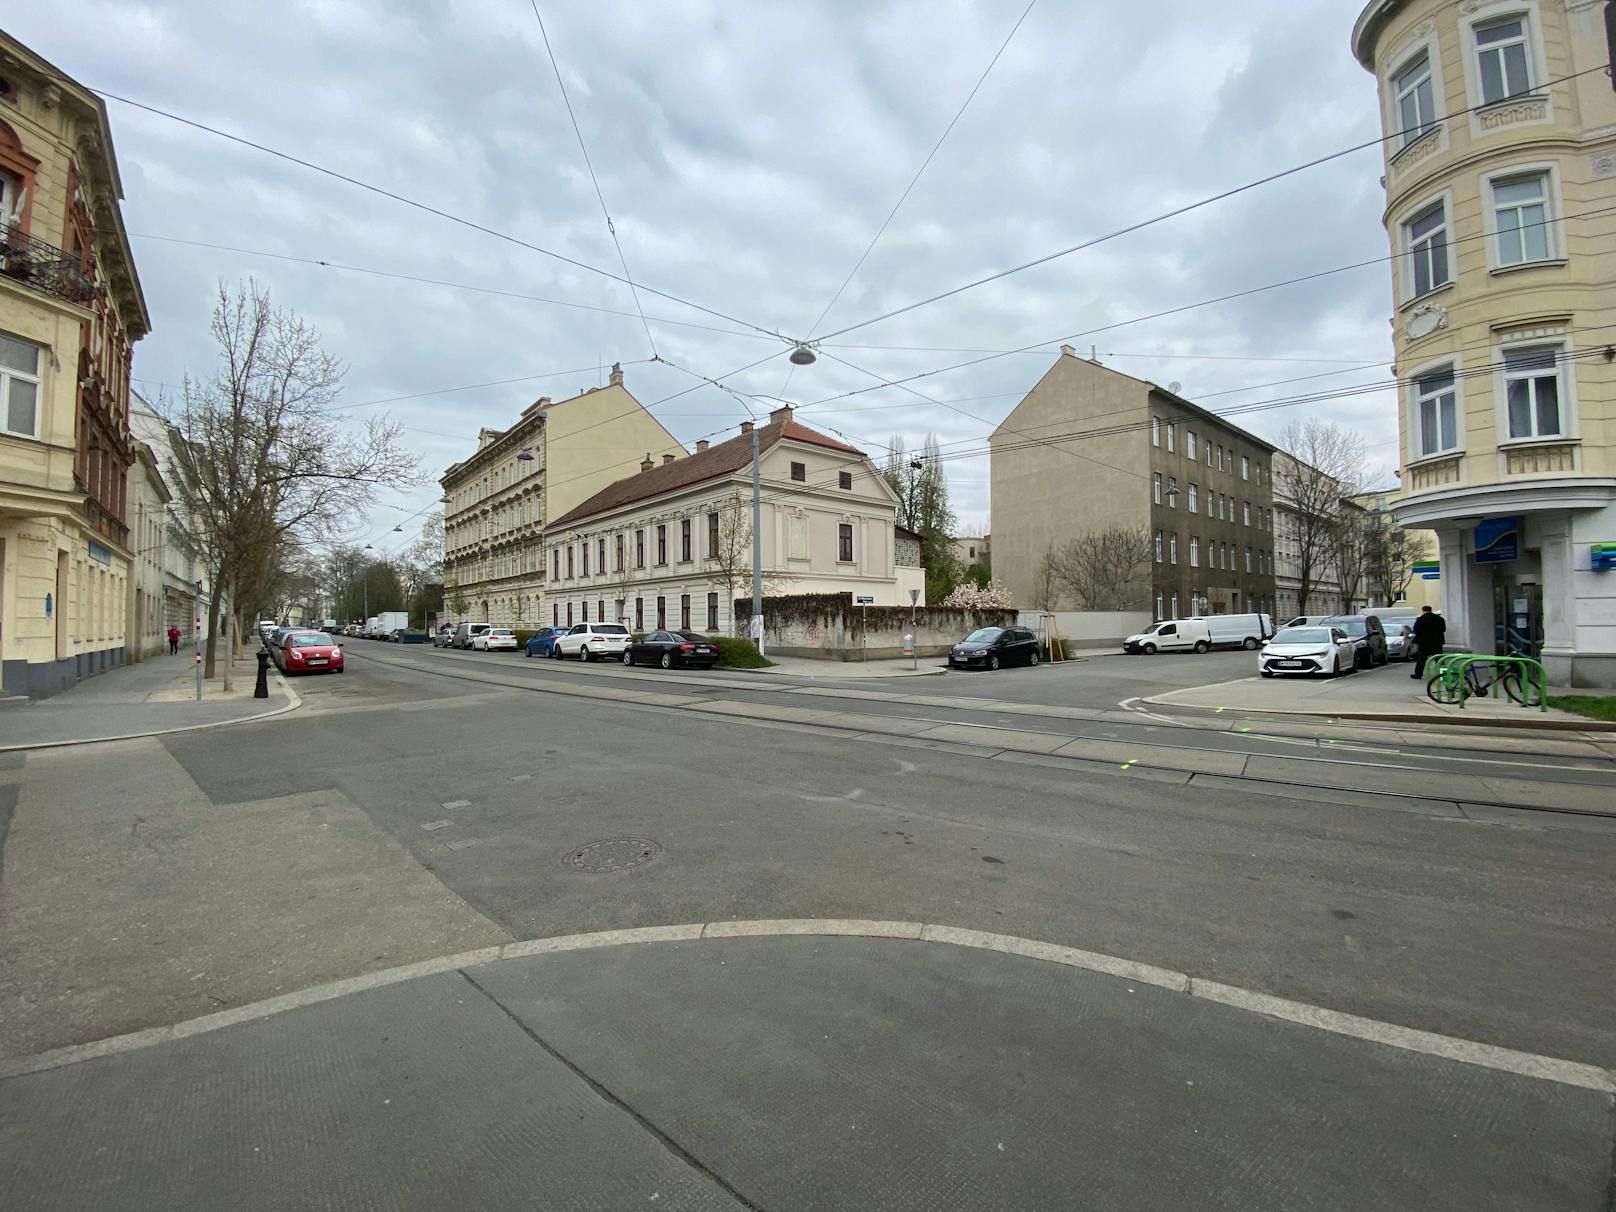 Ein 28-jähriger Fahrer einer Straßenbahn fuhr am Freitag kurz nach 16 Uhr auf der Schloßhofer Straße in Fahrtrichtung Endstation "Kagran" und ...&nbsp;